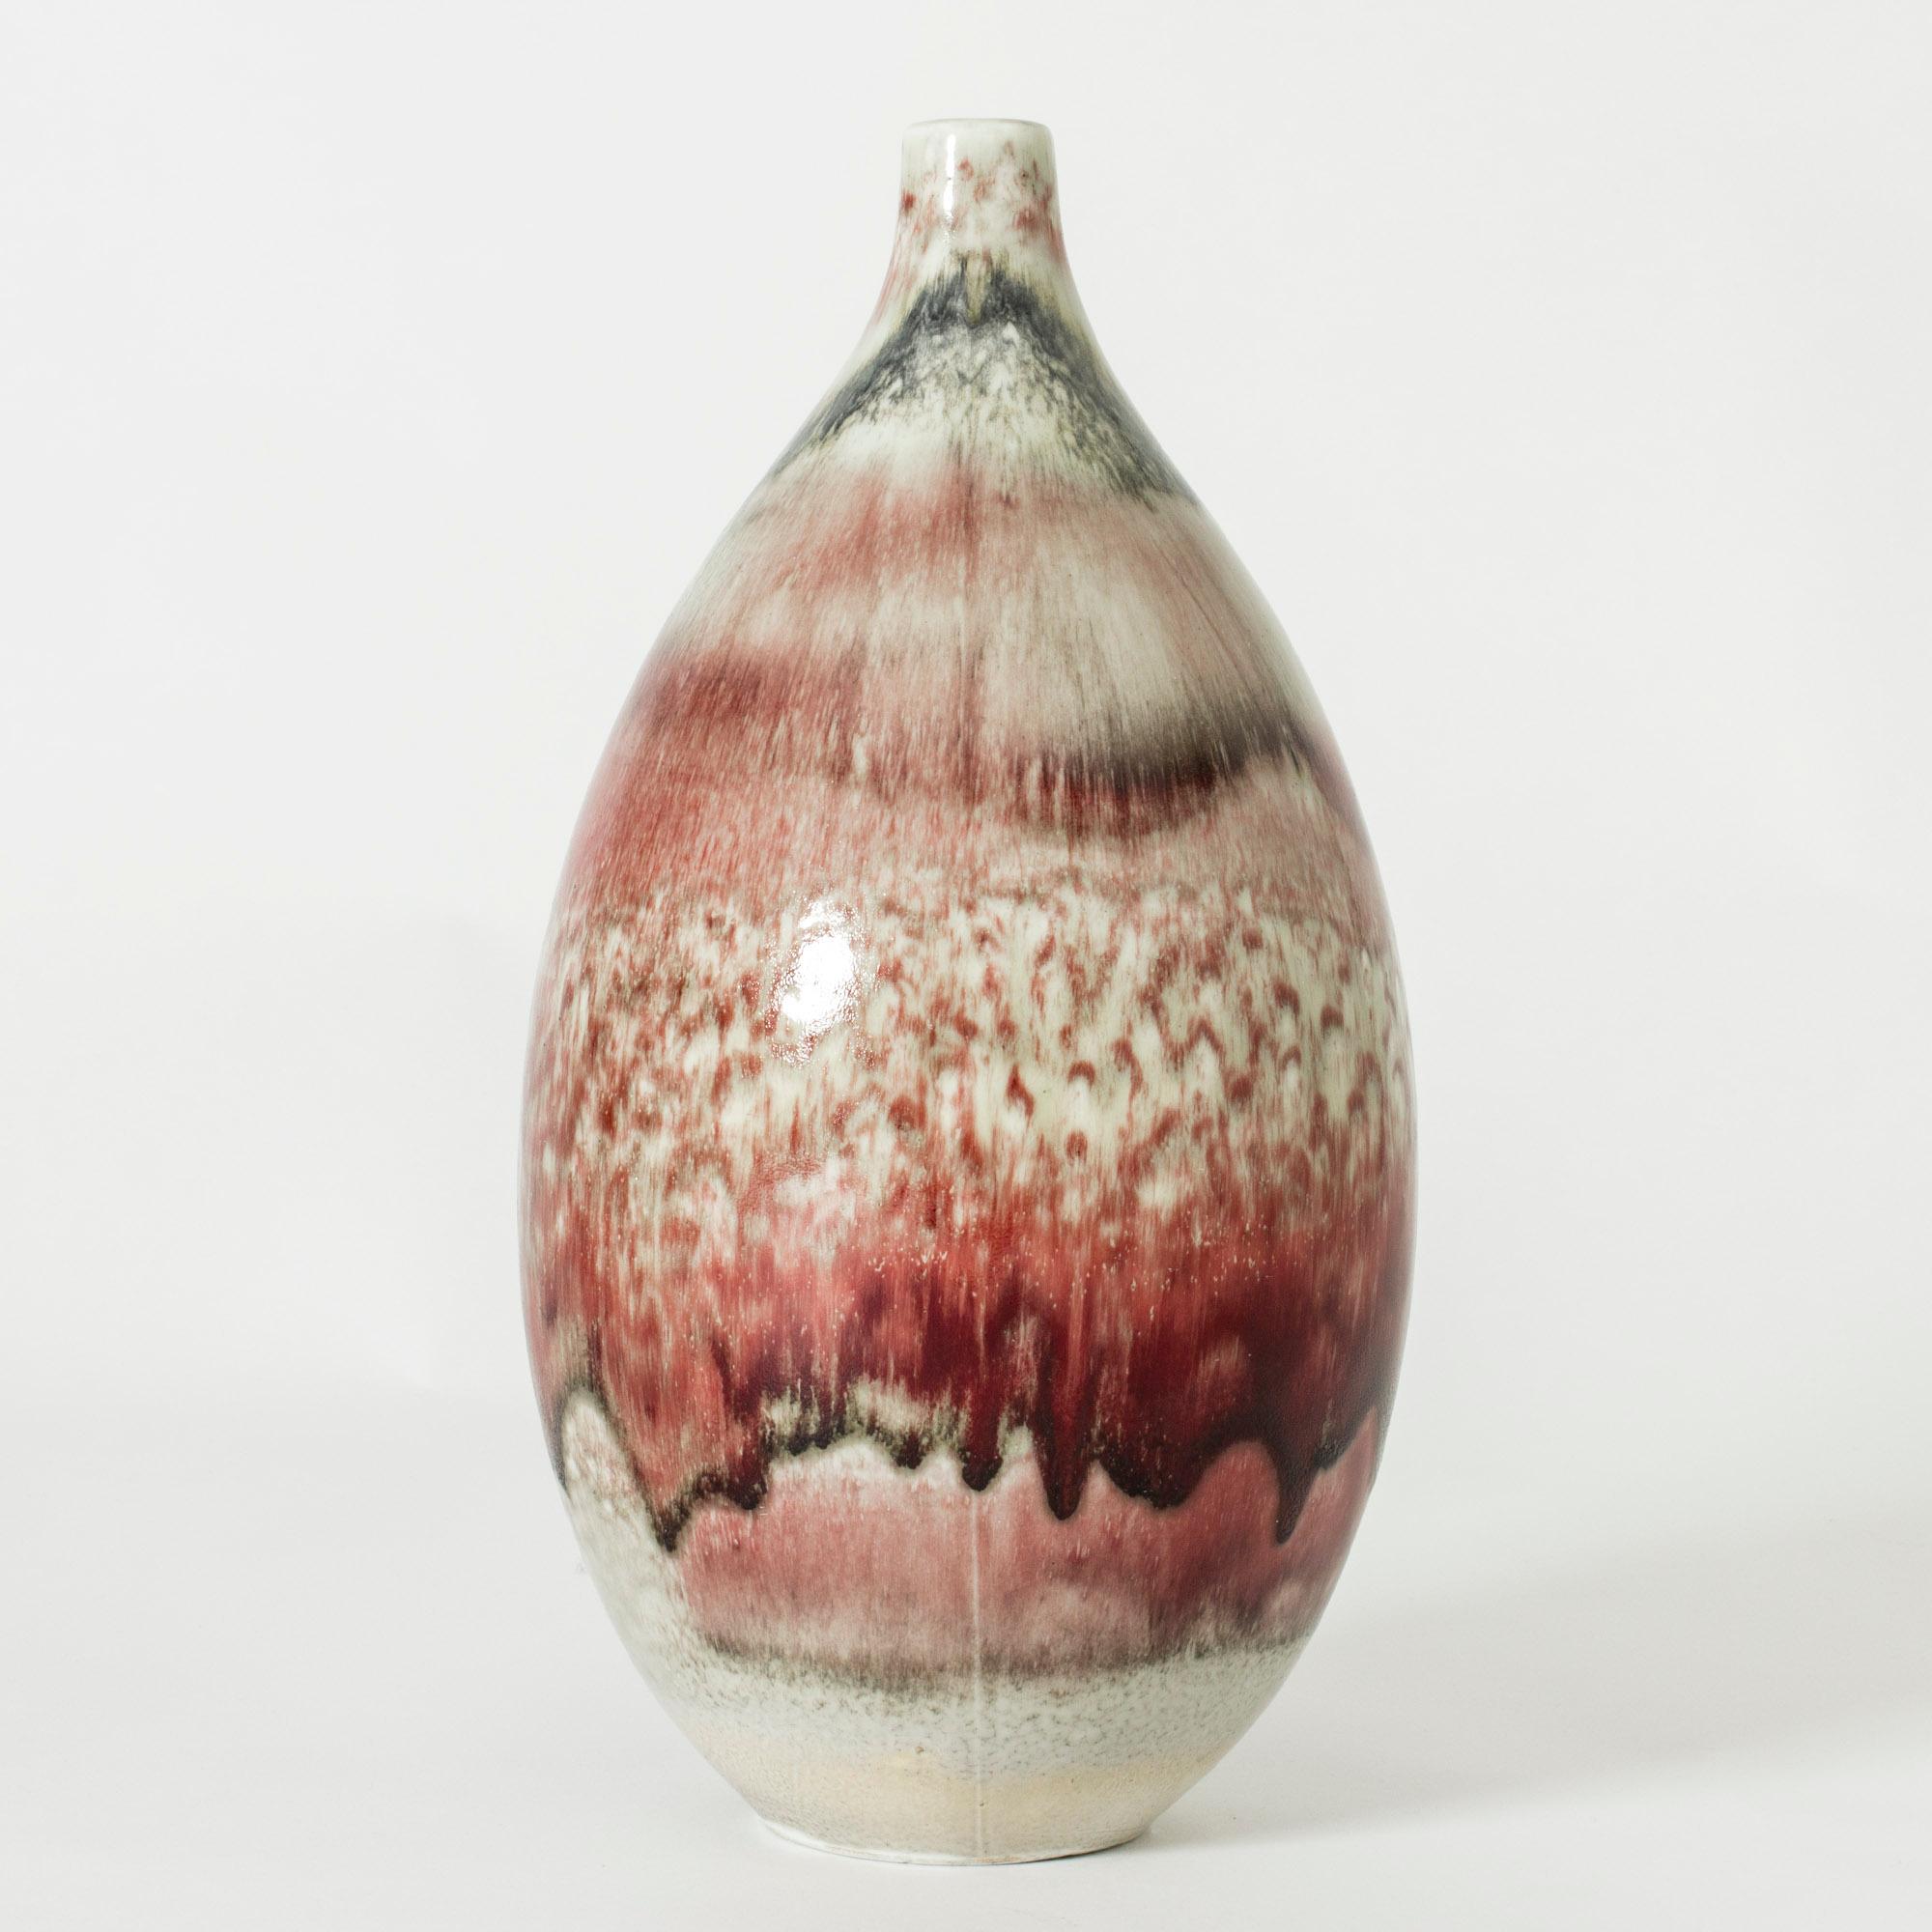 Stoneware vase by Friedl Holzer-Kjellberg, large and voluminous, glazed with amazing, deep red oxblood glaze. Beautiful variation of the glaze around the body.